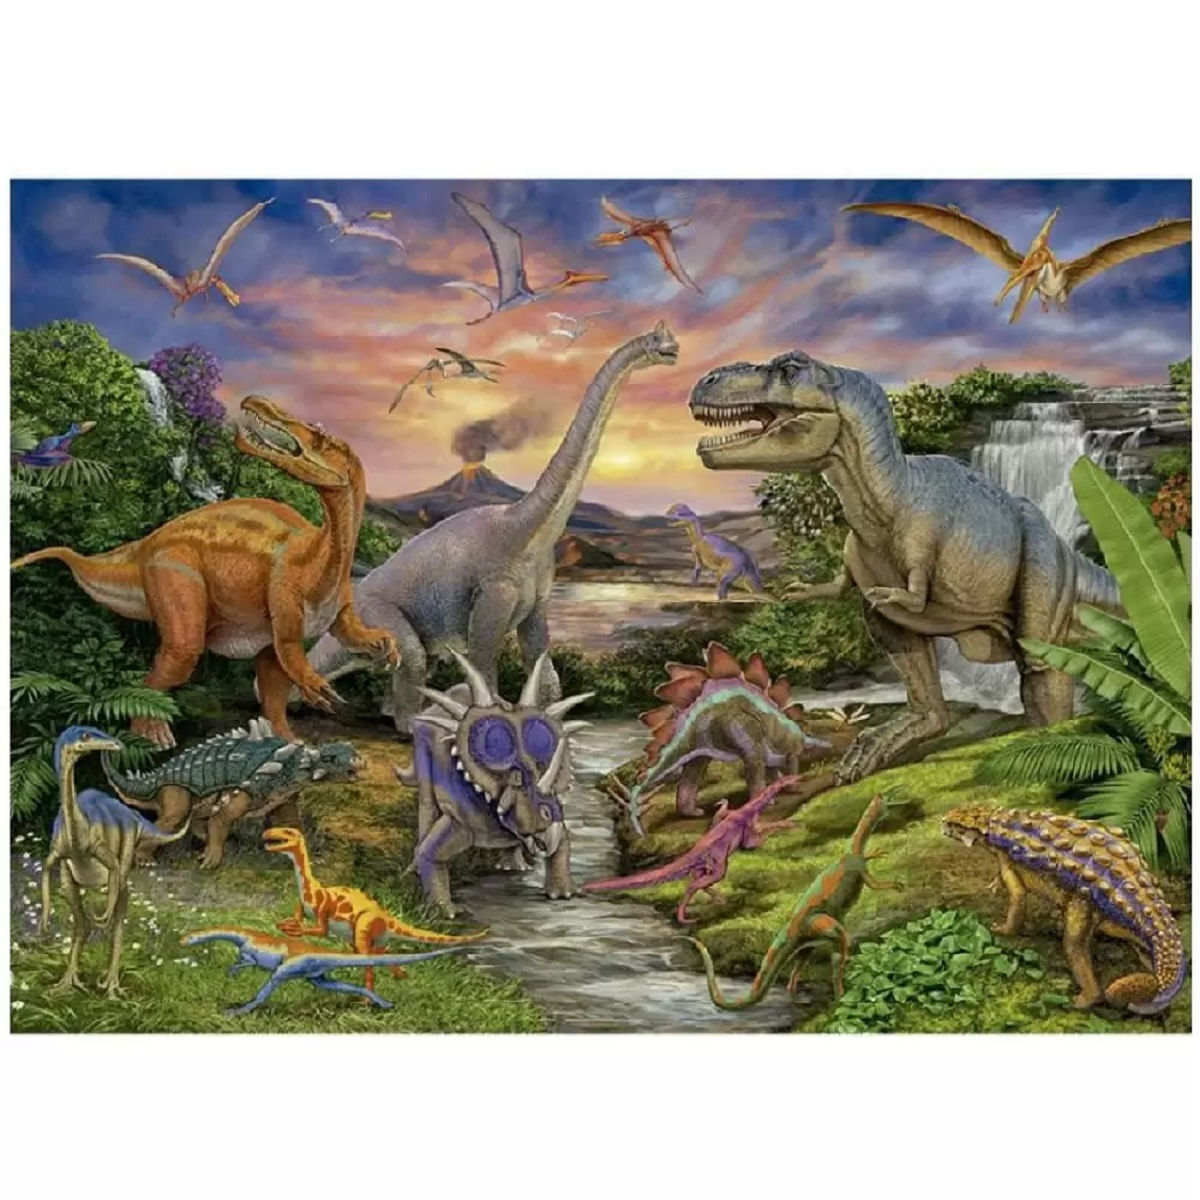 Quebra Cabeça - Dinossauros 100 peças